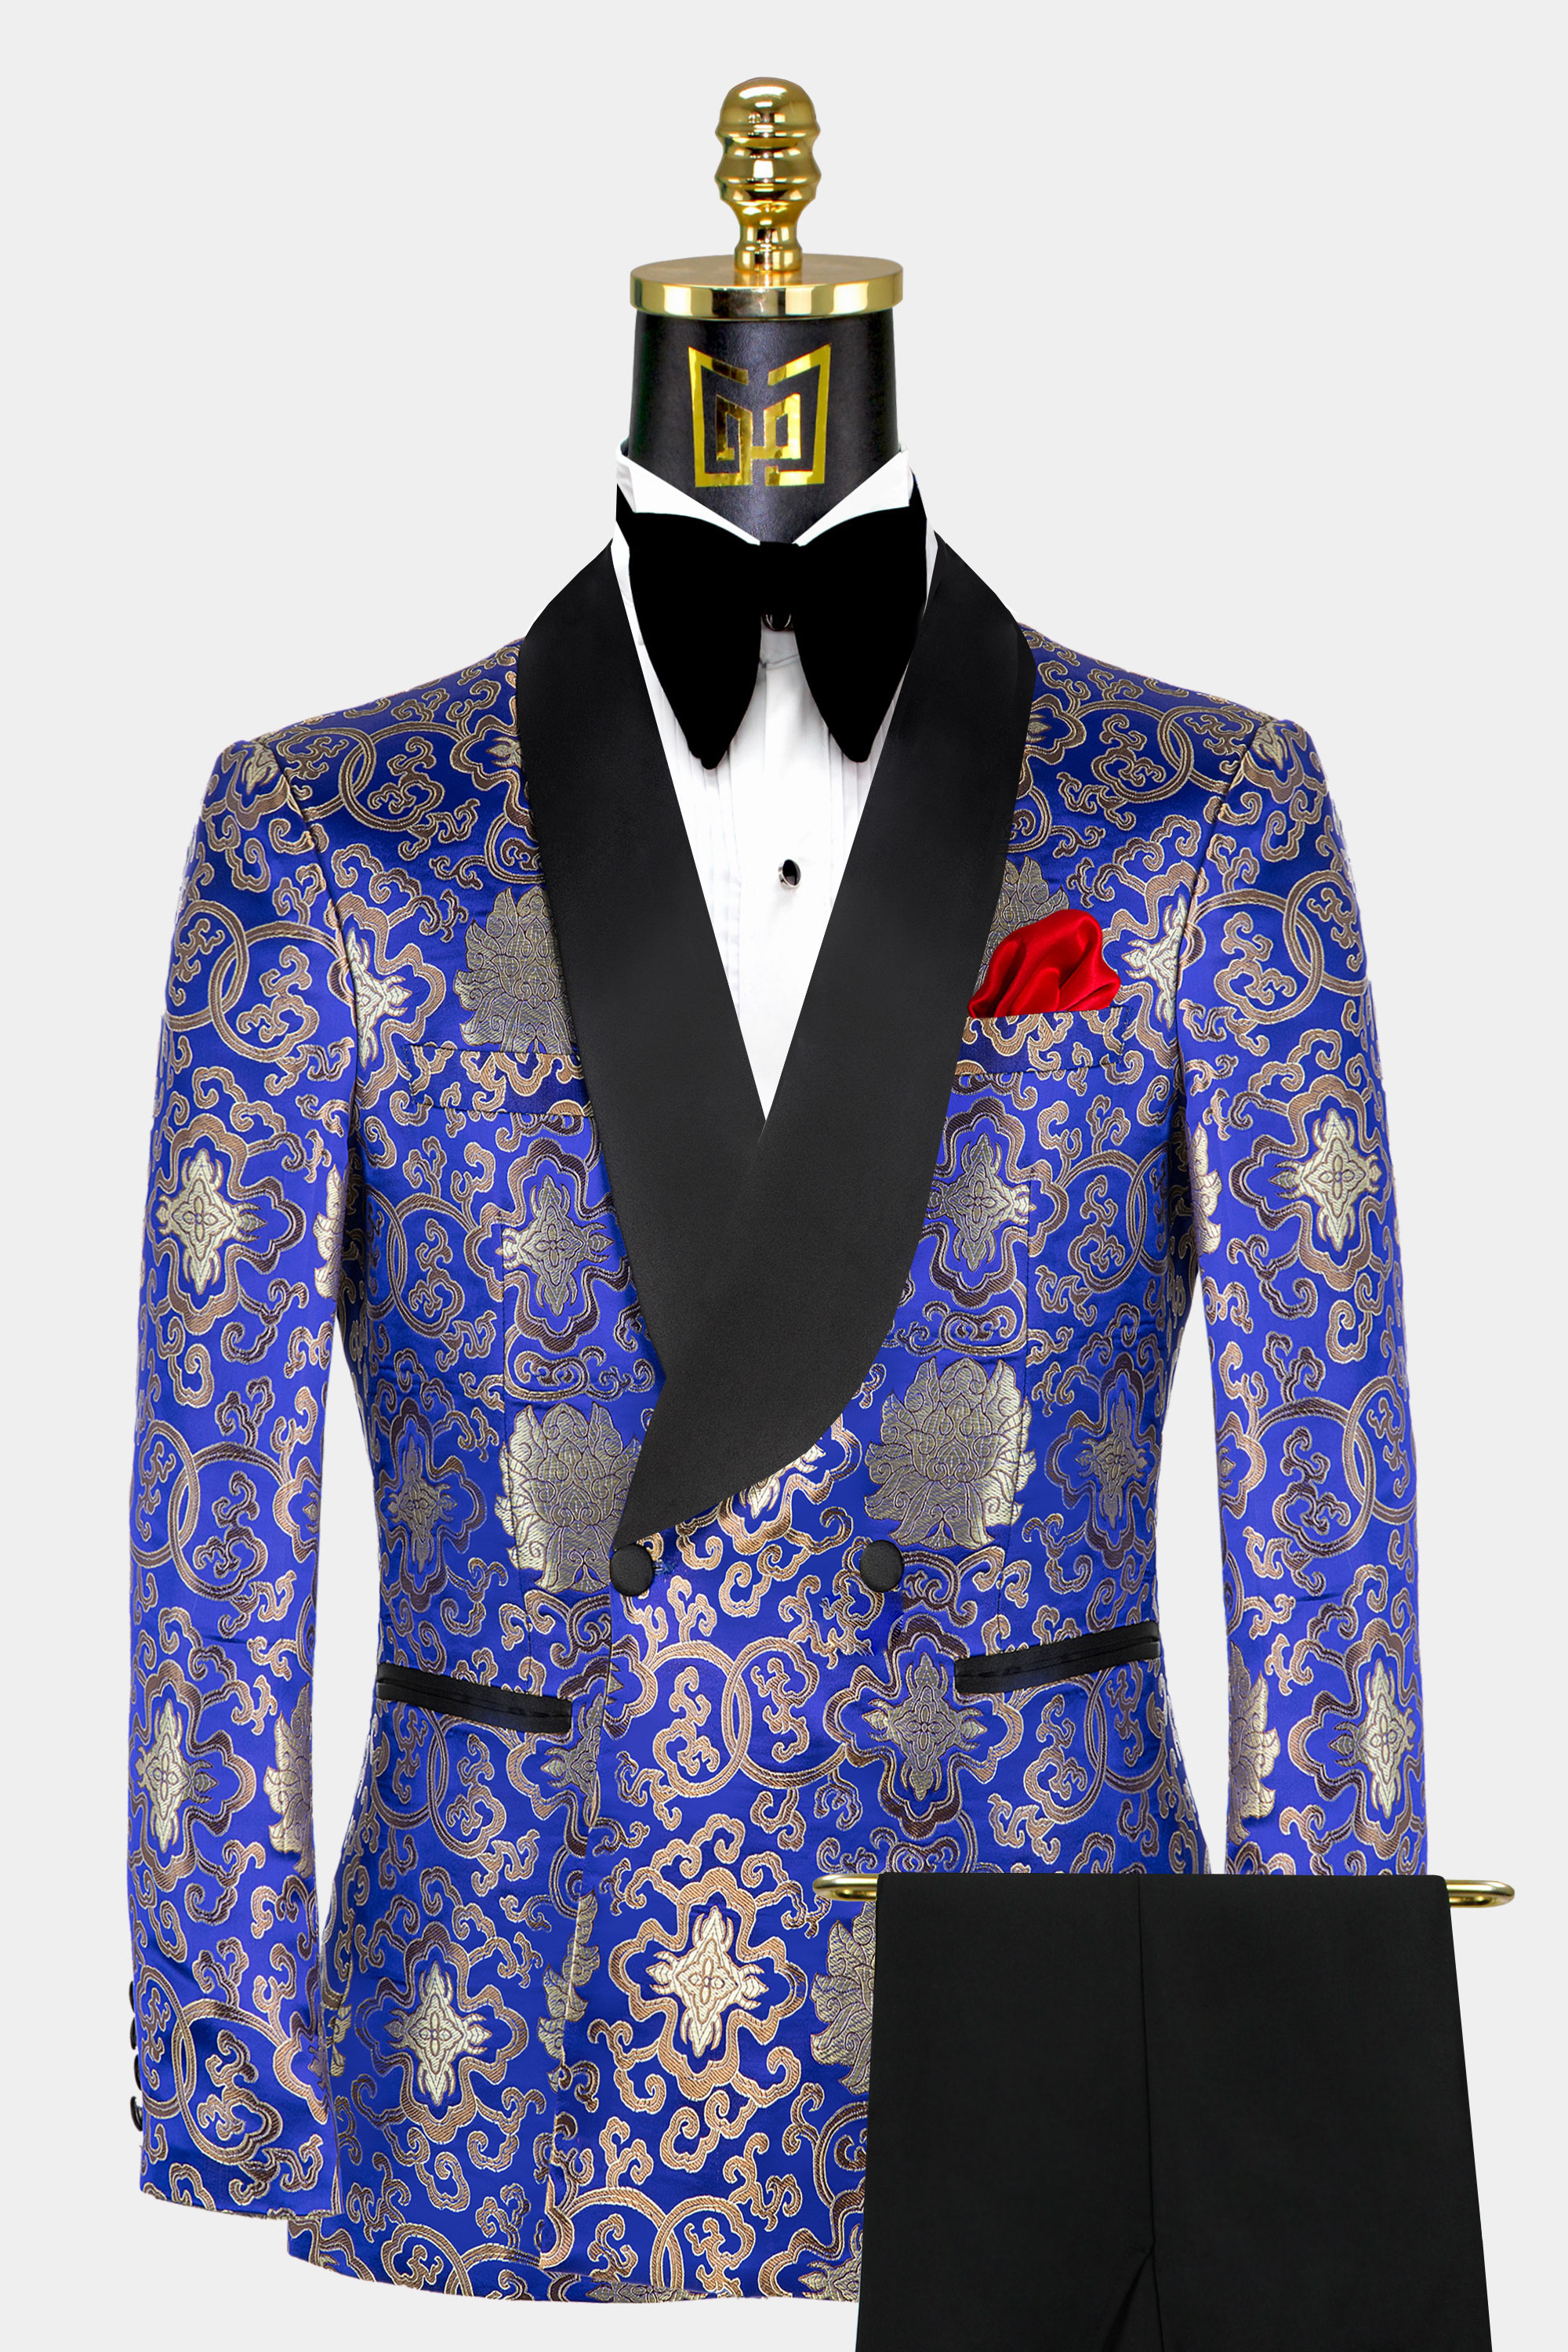 Blue & Gold Suit Combo  Gold suit, Mens fashion, Grey pants